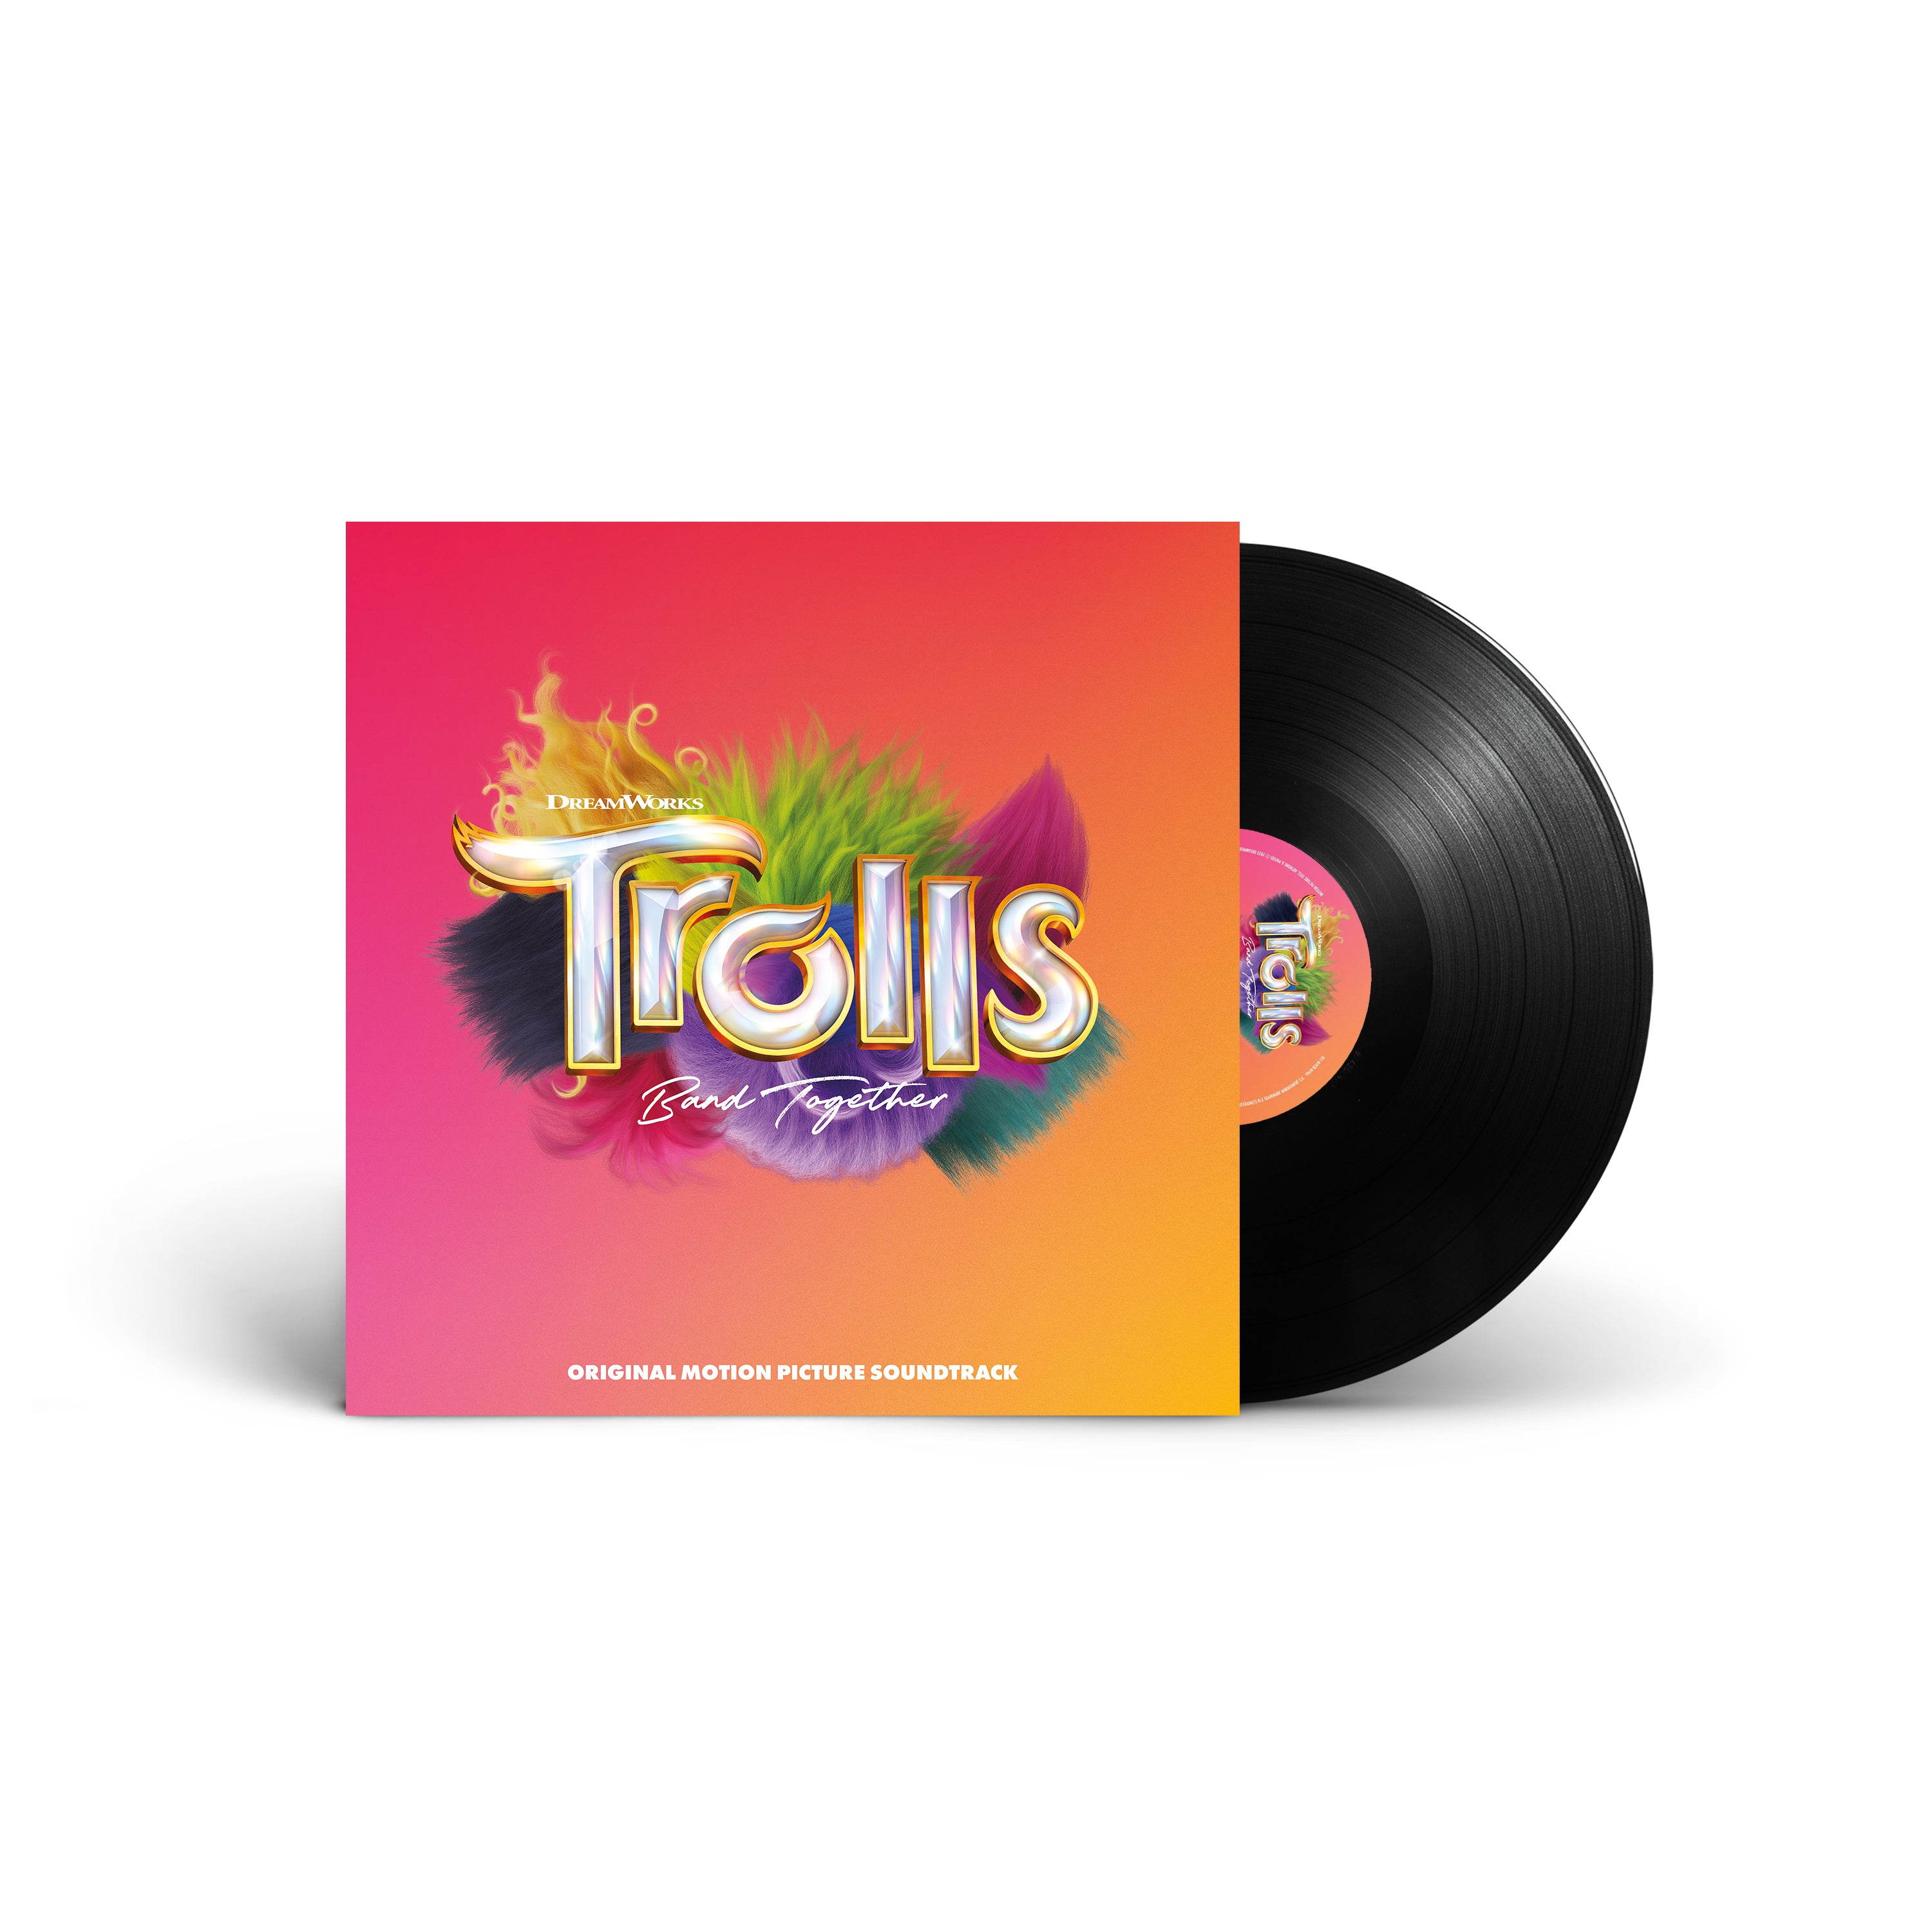 Trolls Band Together (Original Motion Picture Soundtrack)